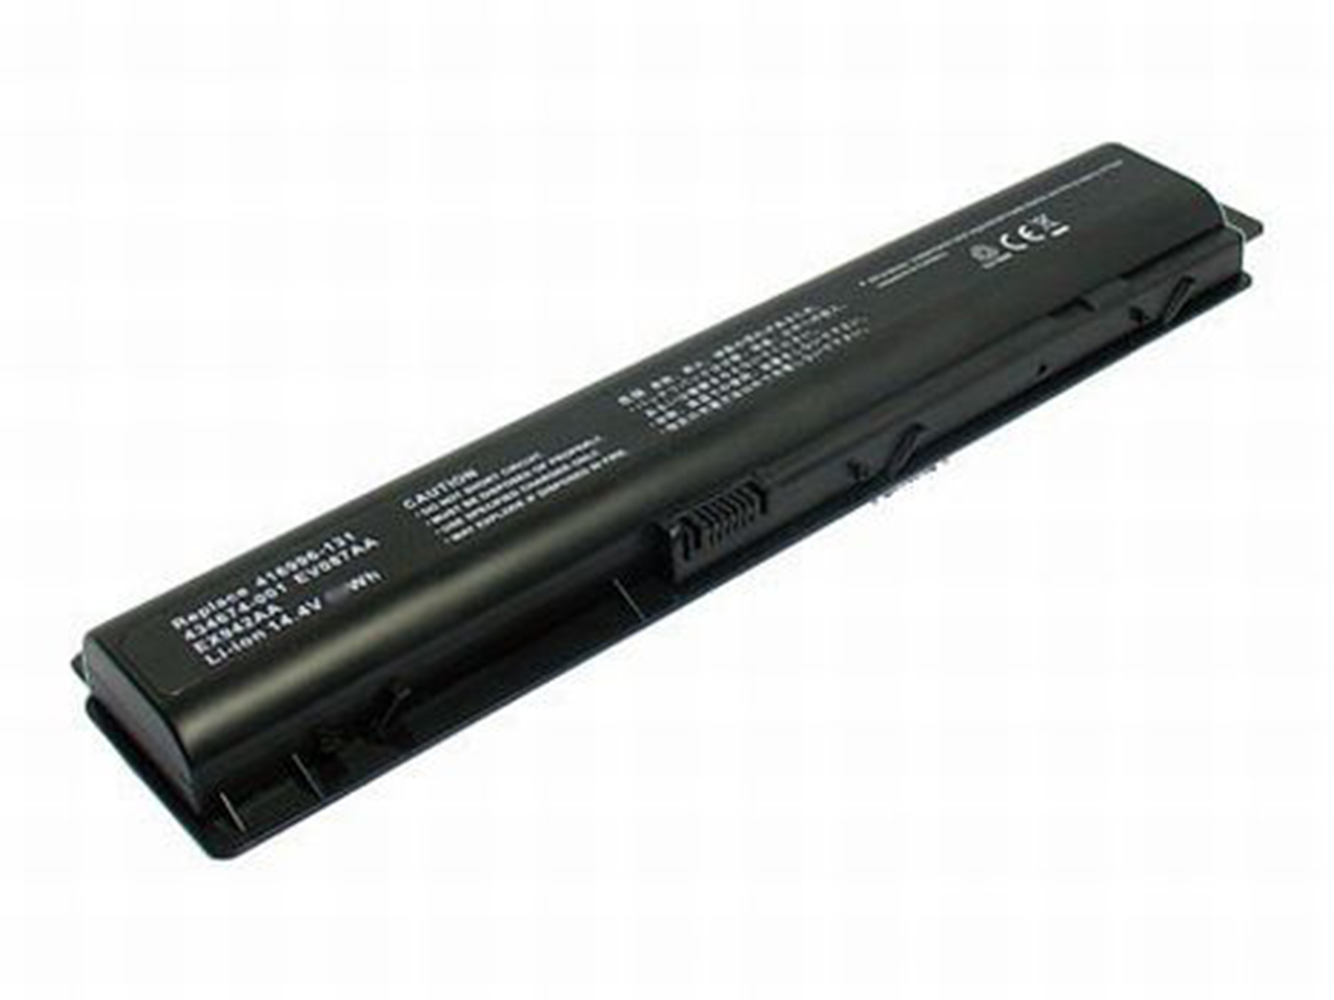 Hp 416996-131, 416996-441 Laptop Batteries For Pavilion Dv9000ea, Pavilion Dv9000t replacement